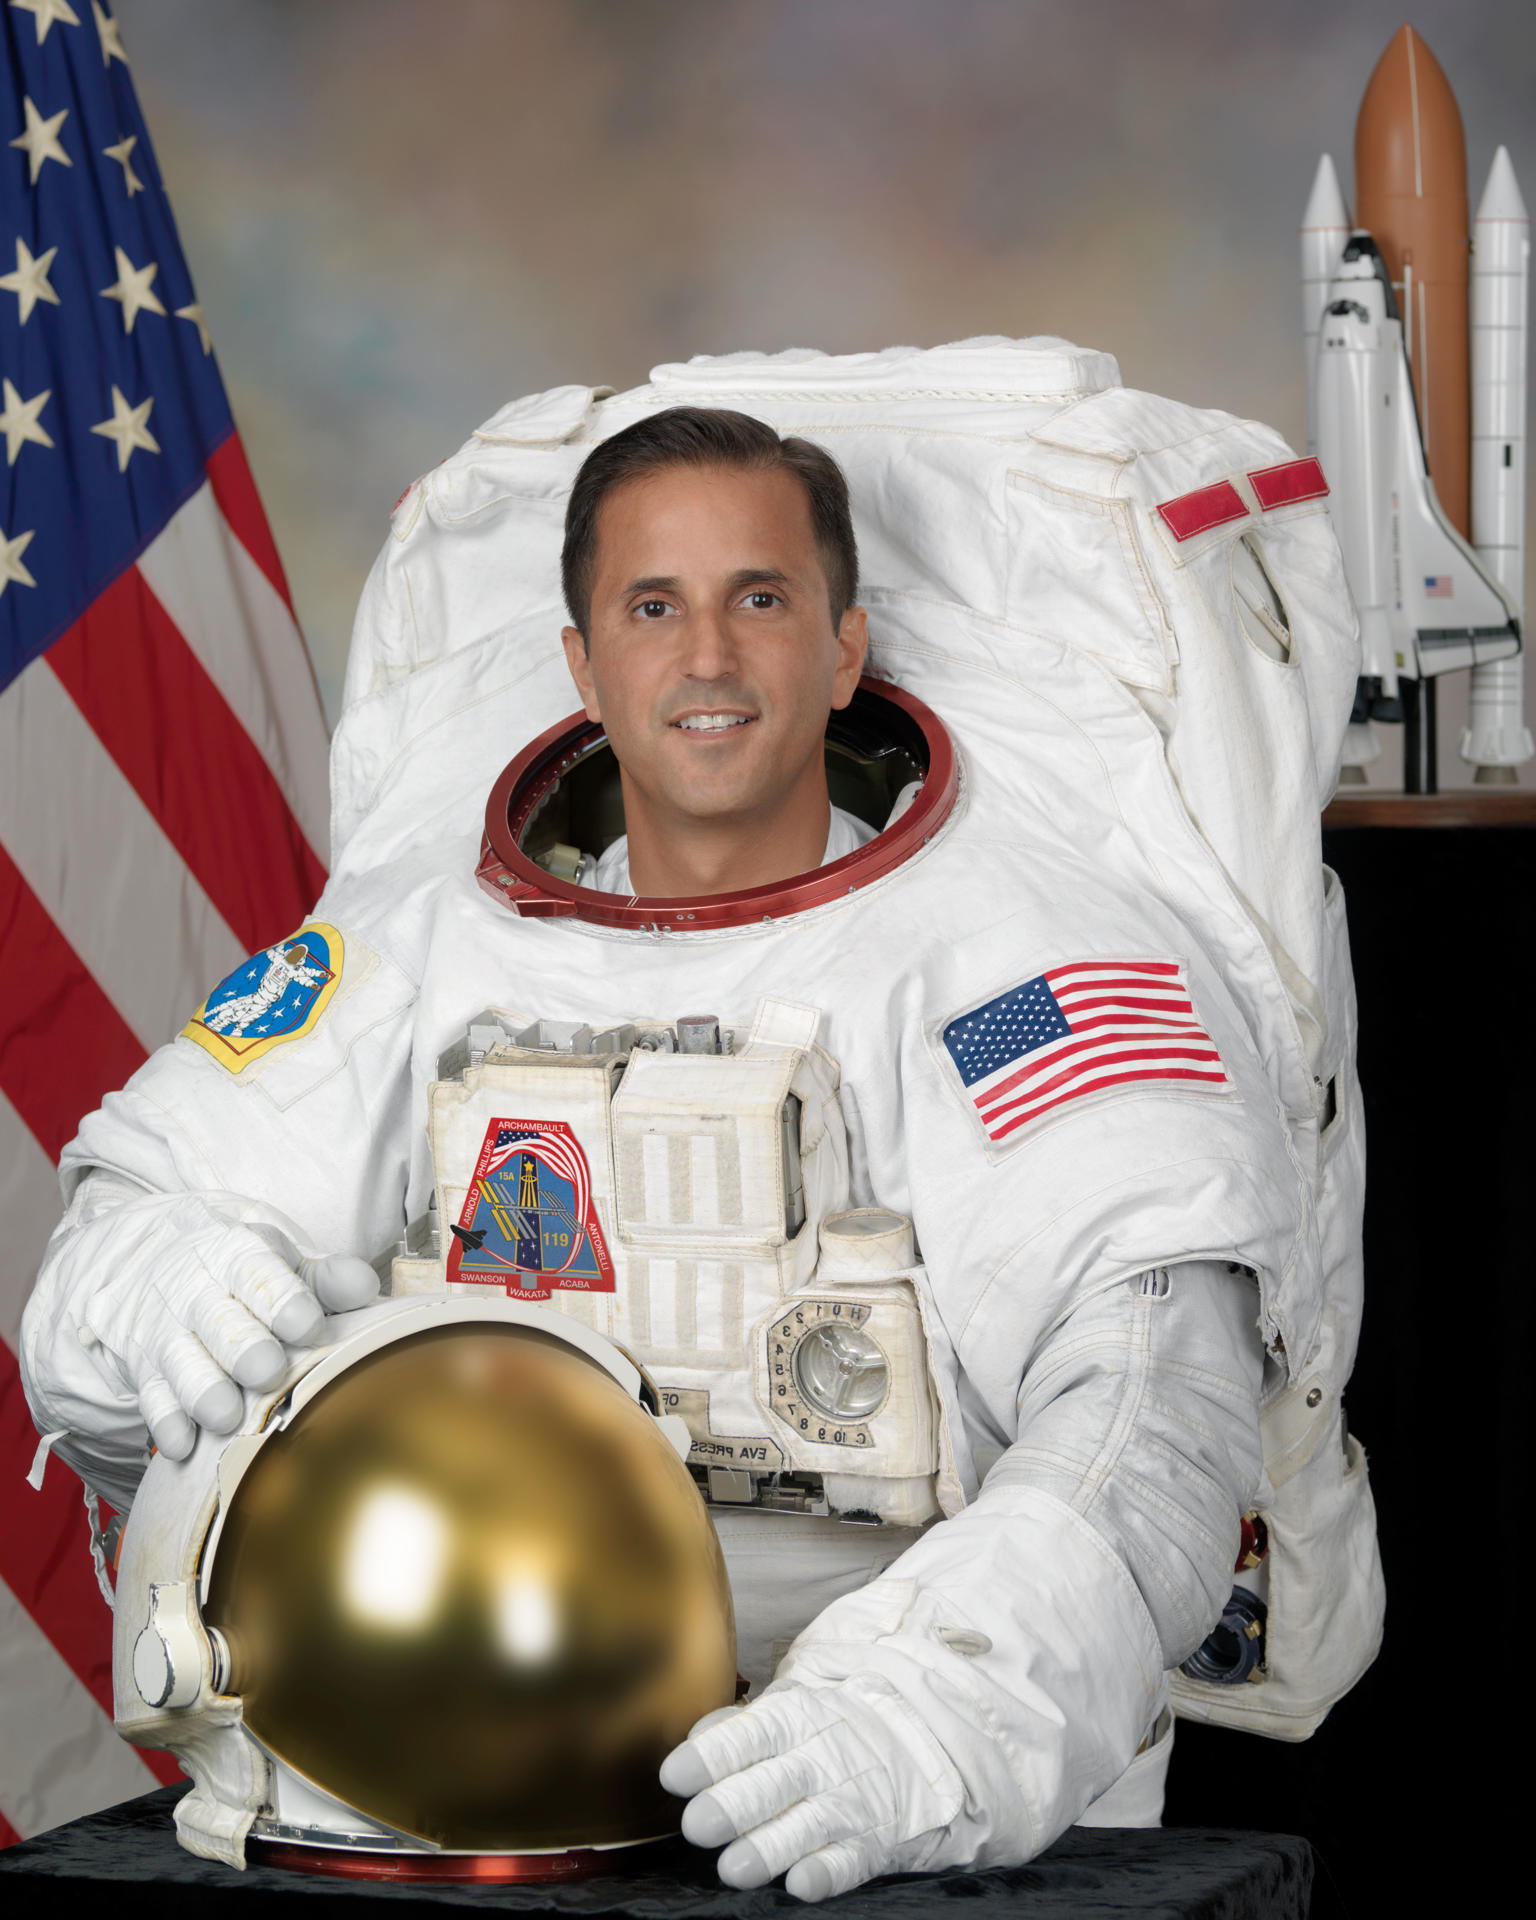 Fotografía cedida por la NASA donde aparece el veterano astronauta de origen puertorriqueño Joseph Acabá que ha estado un total de 306 días en el espacio, repartidos en tres misiones. EFE/NASA /SOLO USO EDITORIAL/NO VENTAS/SOLO DISPONIBLE PARA ILUSTRAR LA NOTICIA QUE ACOMPAÑA/CRÉDITO OBLIGATORIO